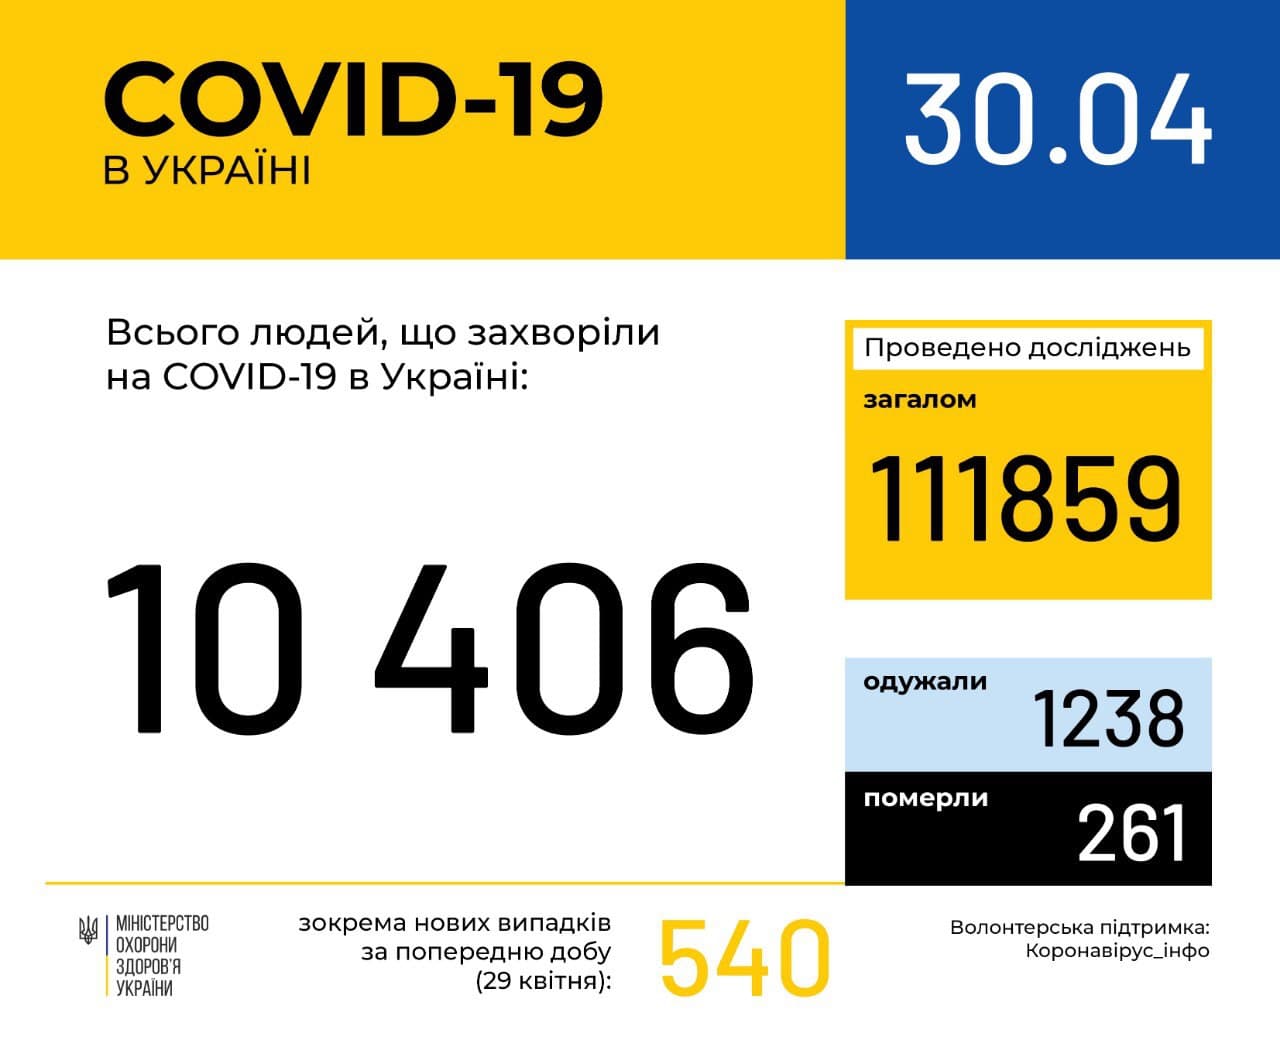 В Україні зафіксовано 10406 випадків коронавірусної хвороби COVID-19, - МОЗ